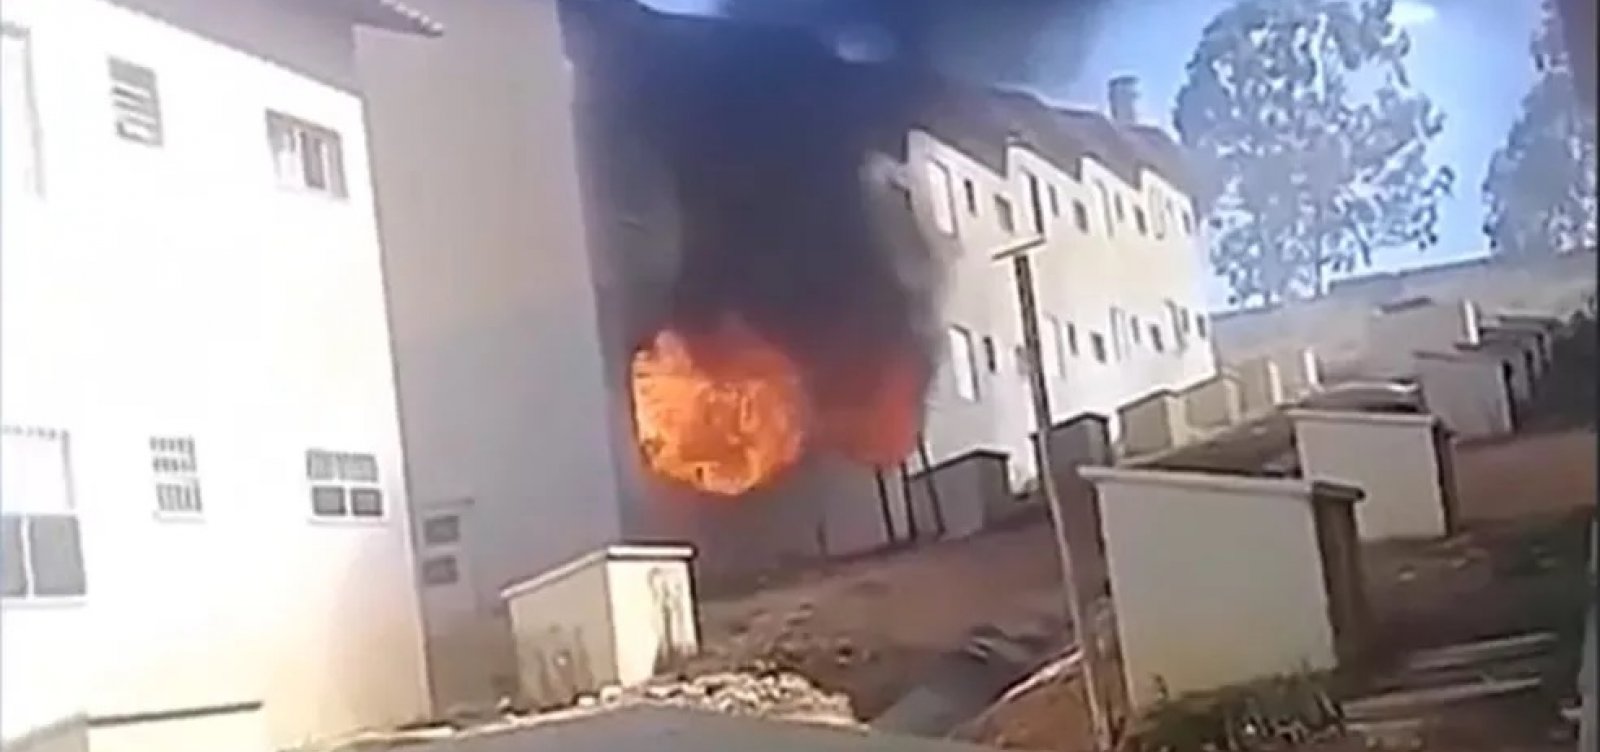 Criança risca fósforo e casa é consumida por incêndio no interior da Bahia  